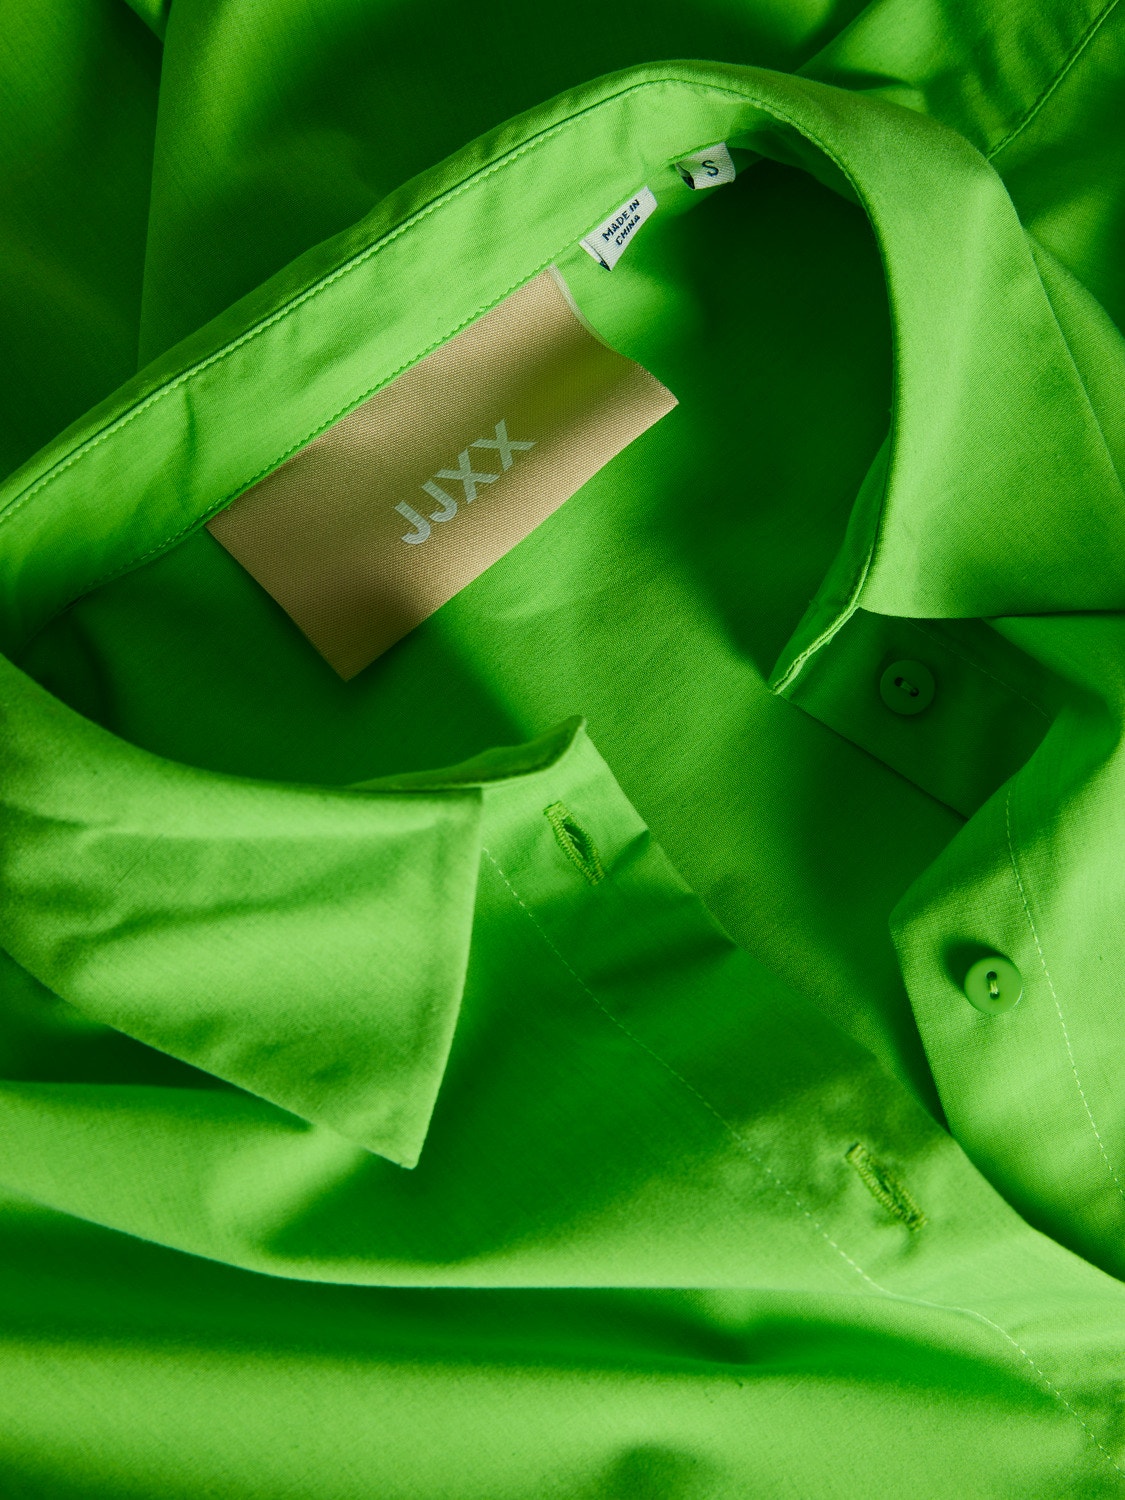 JJXX JXMISSION Casual shirt -Green Flash - 12203522